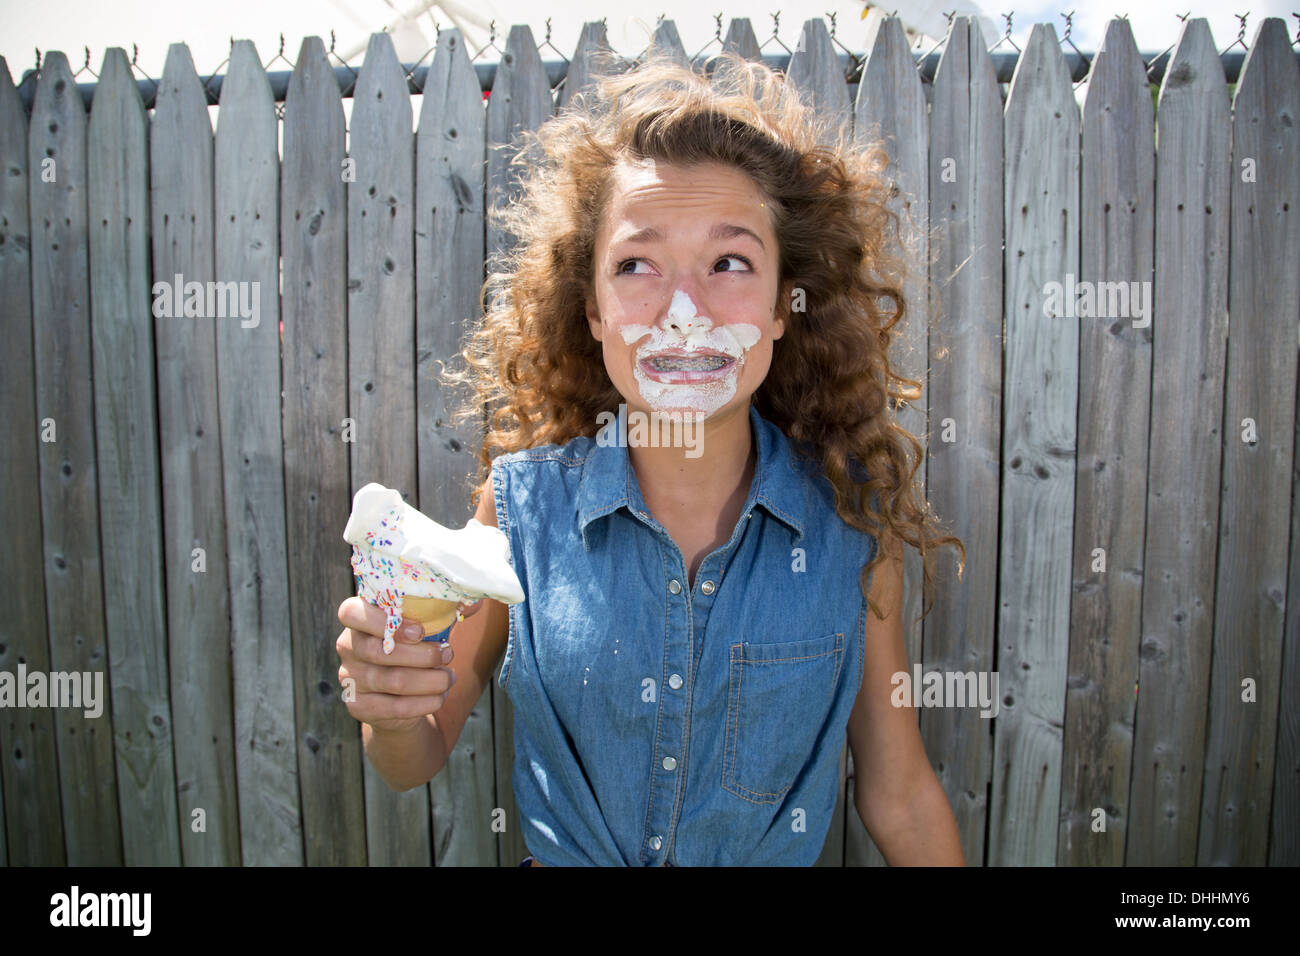 Adolescente avec de la glace sur le visage Banque D'Images